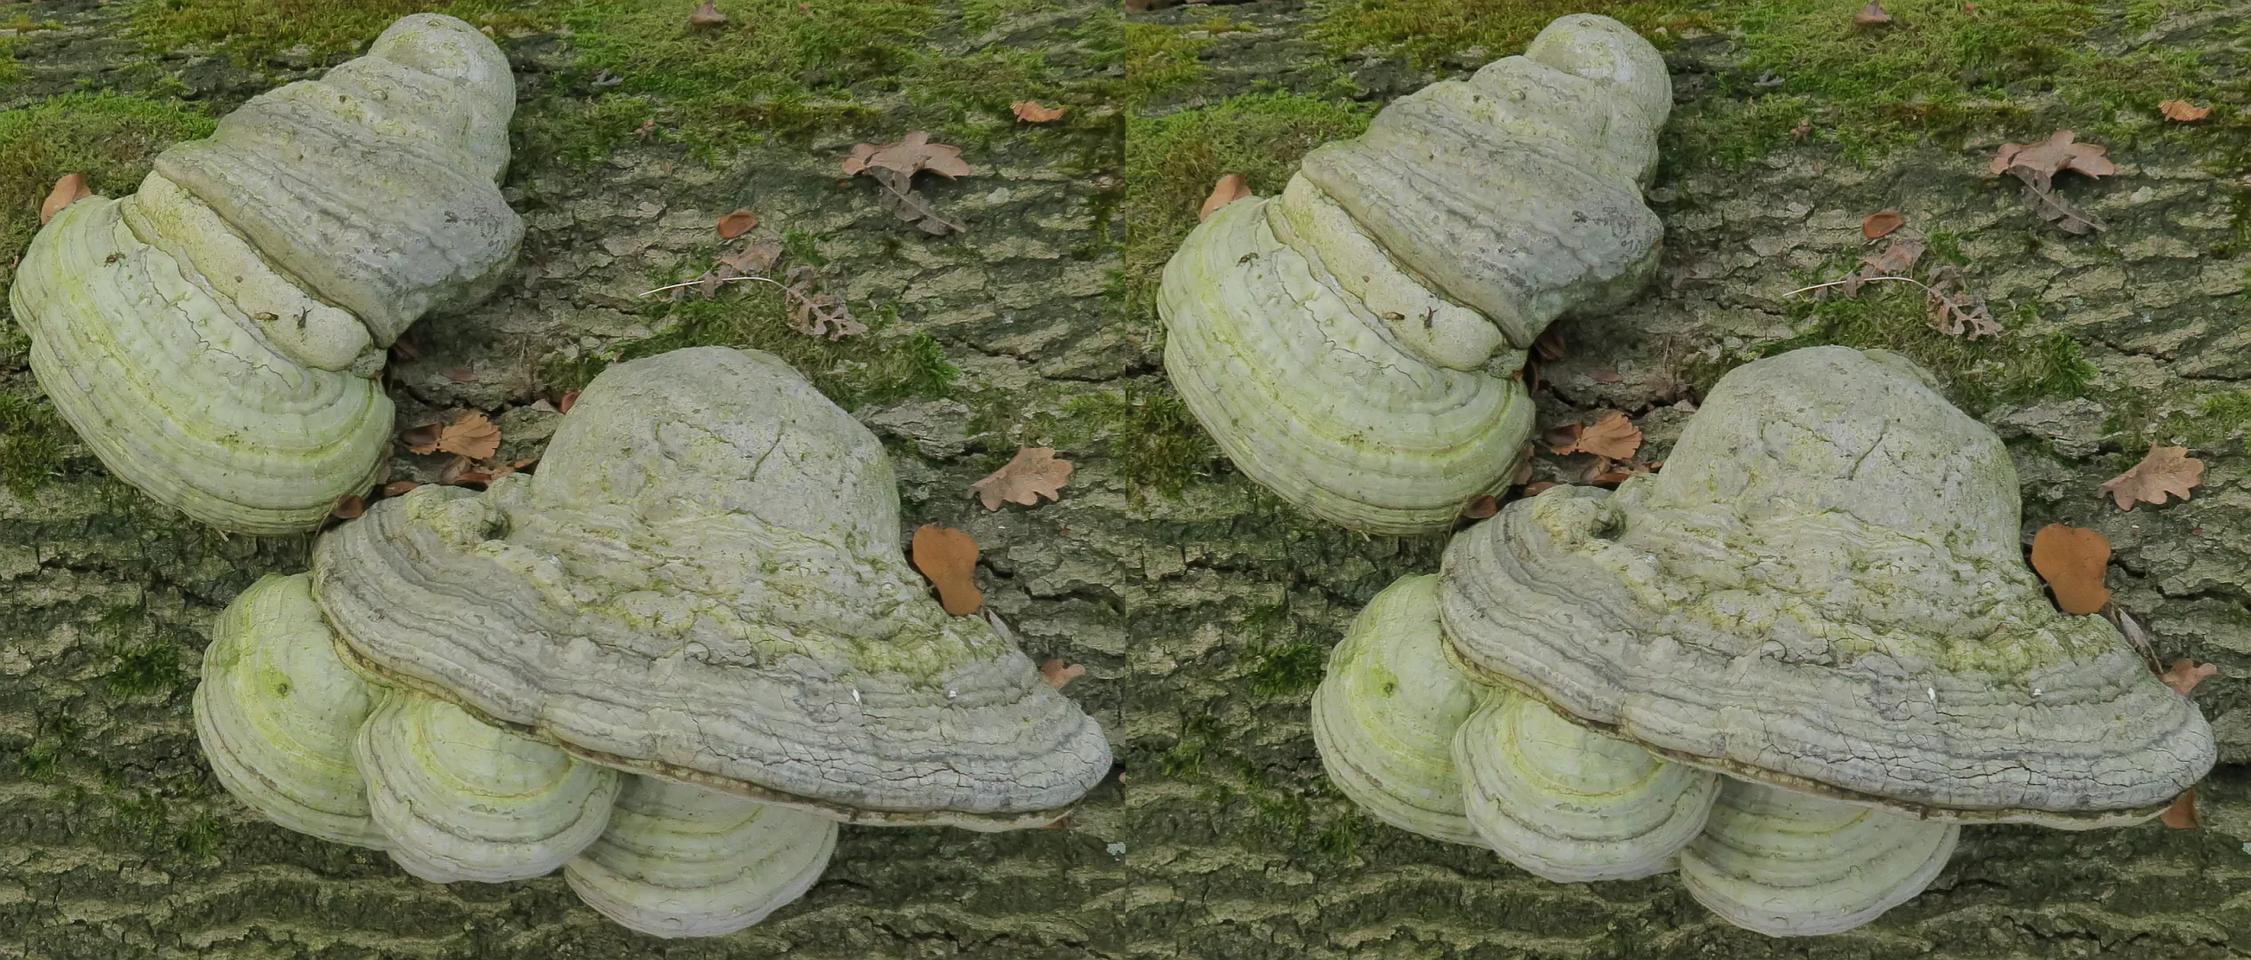 Fungi on a dead oak